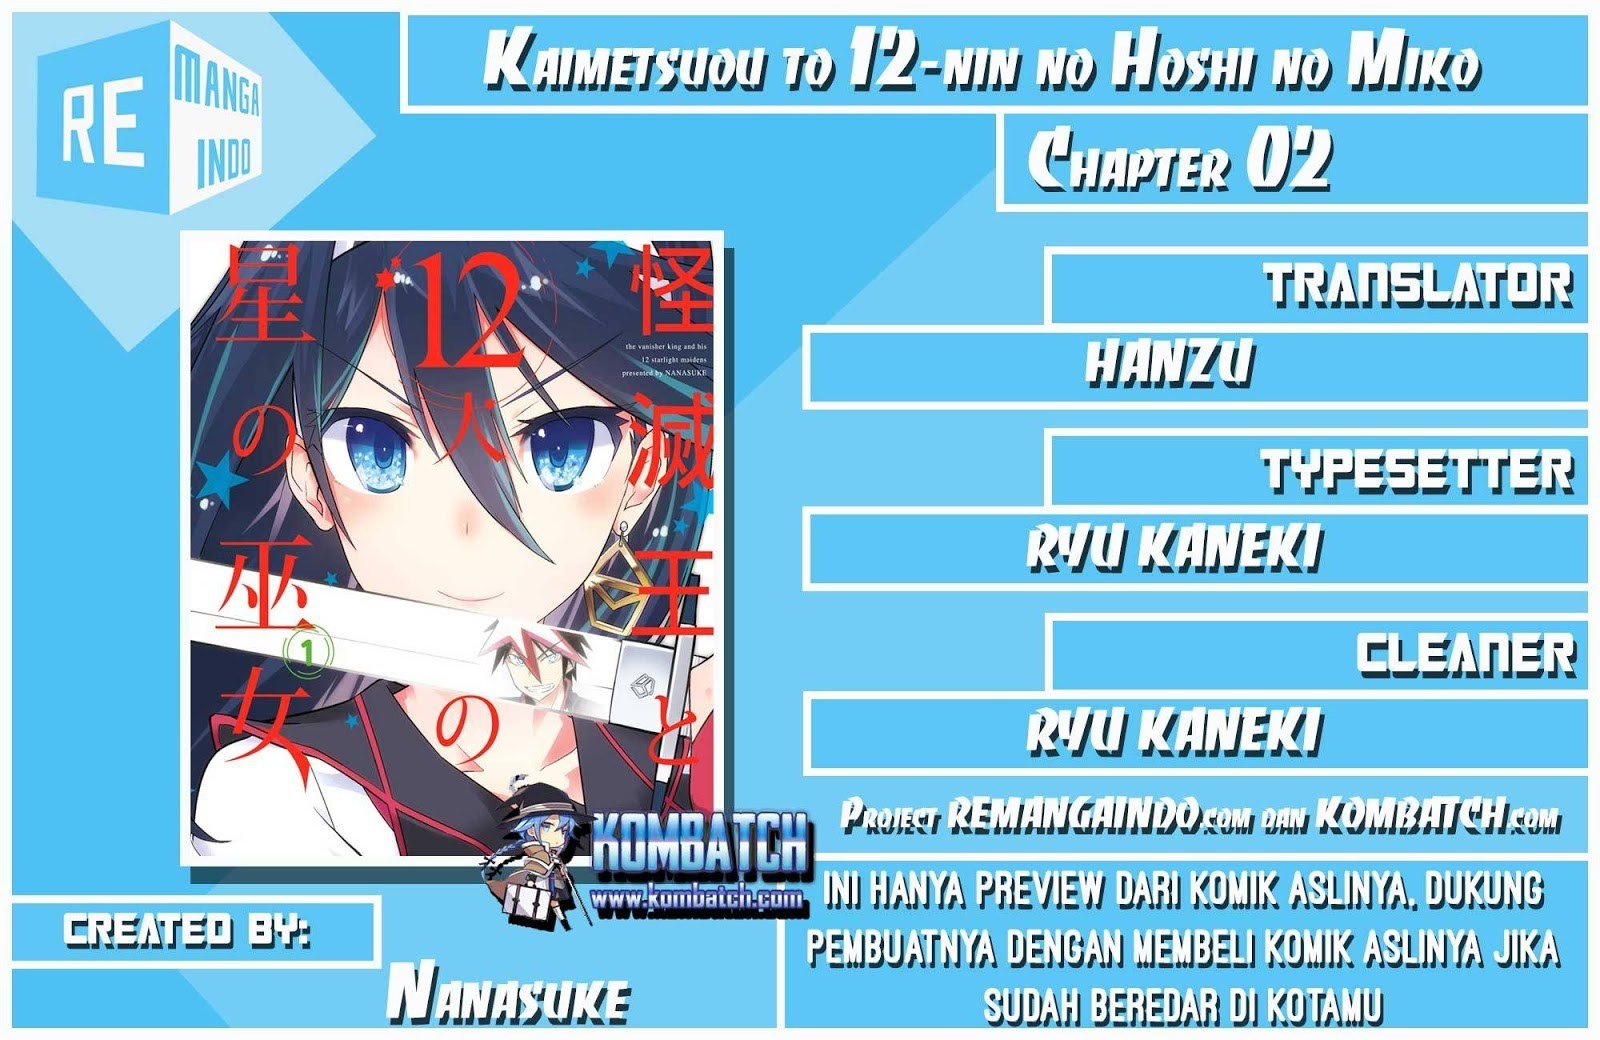 Kaimetsuou to 12-nin no Hoshi no Miko Chapter 02